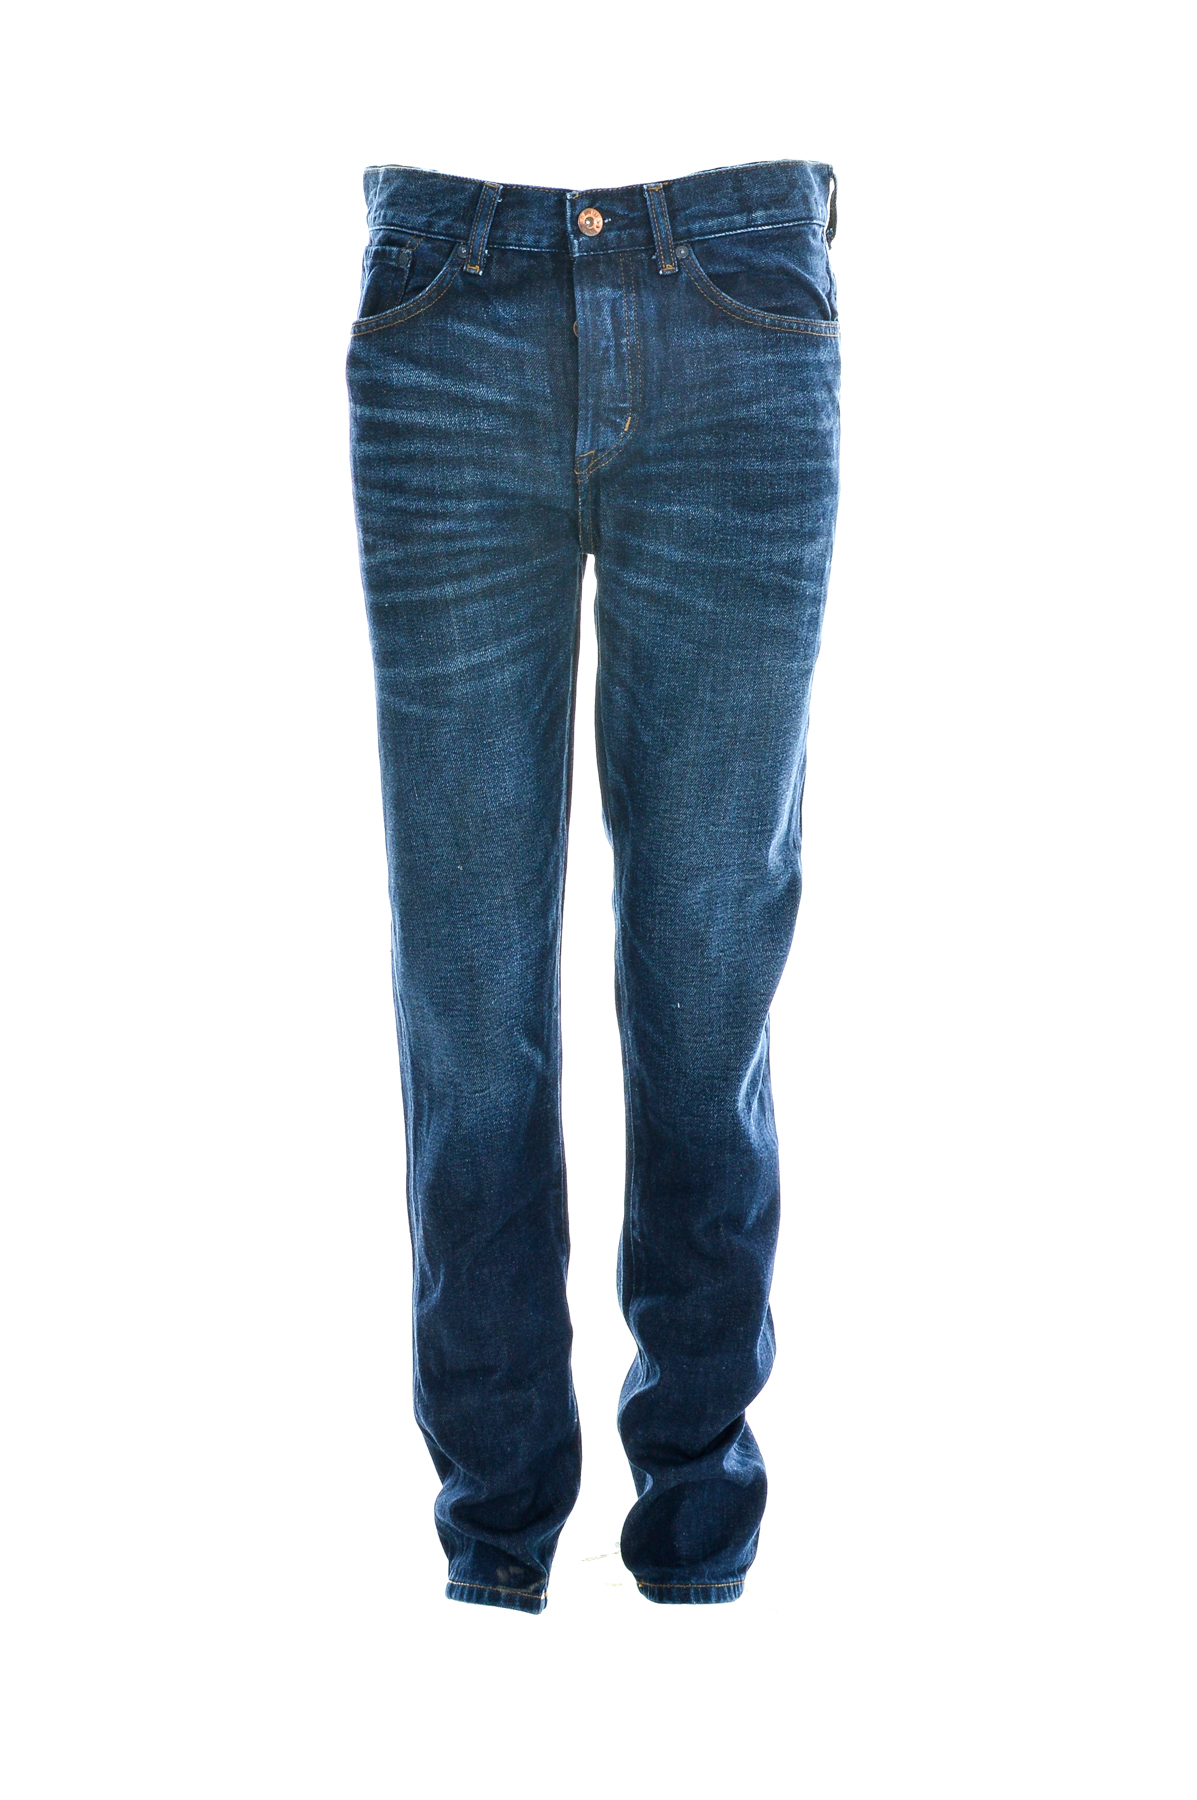 Men's jeans - H&M - 0